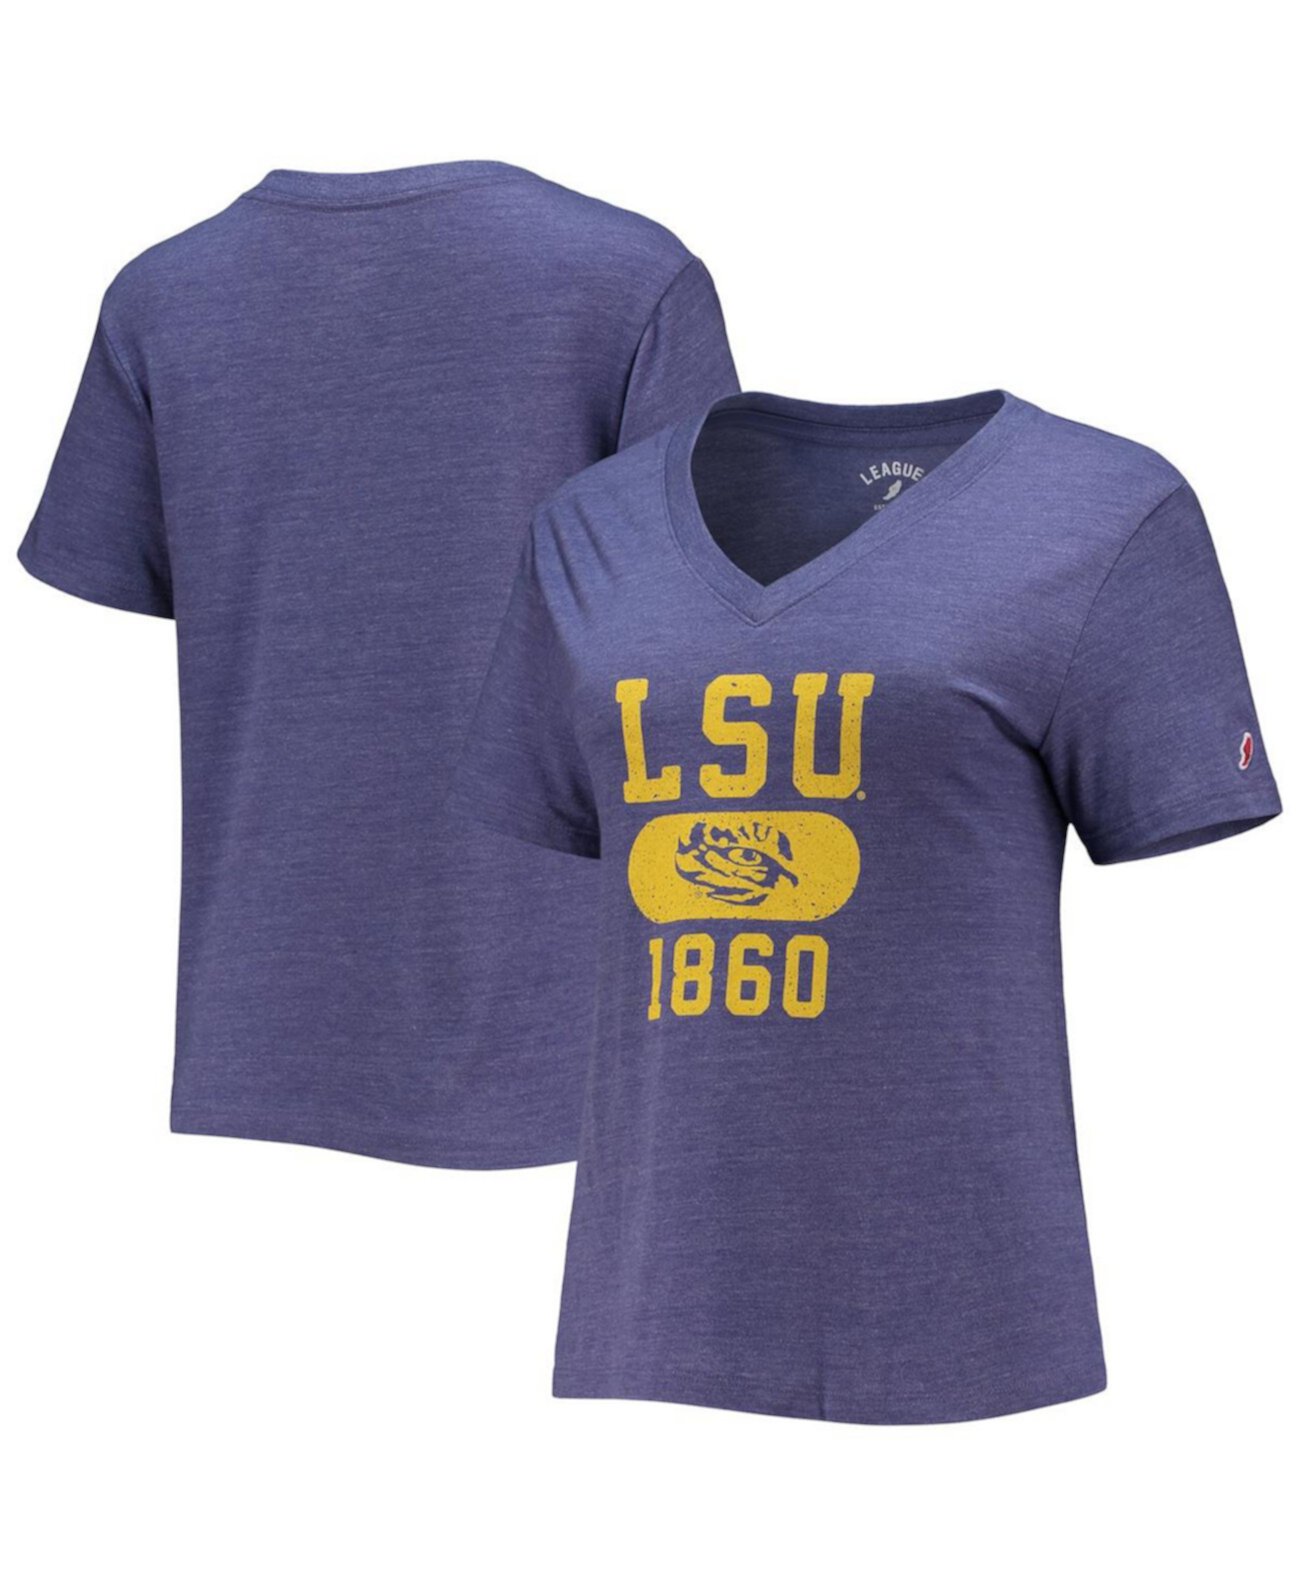 Женская футболка LSU Tigers Intramural Boyfriend Tri-Blend с v-образным вырезом в мелкую отделку фиолетового цвета League Collegiate Wear